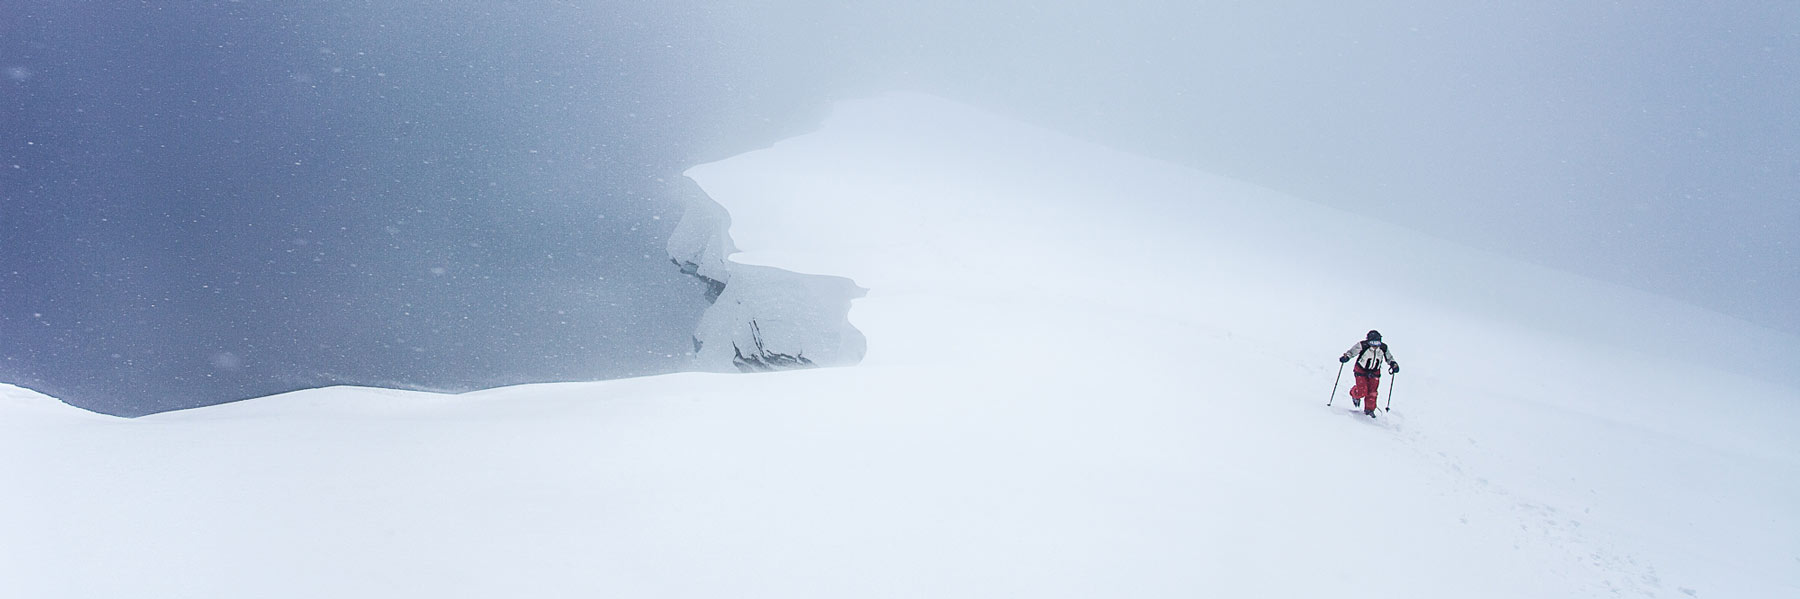 Die letzten Meter zum Gipfel des Großen Möchner im Schneesturm